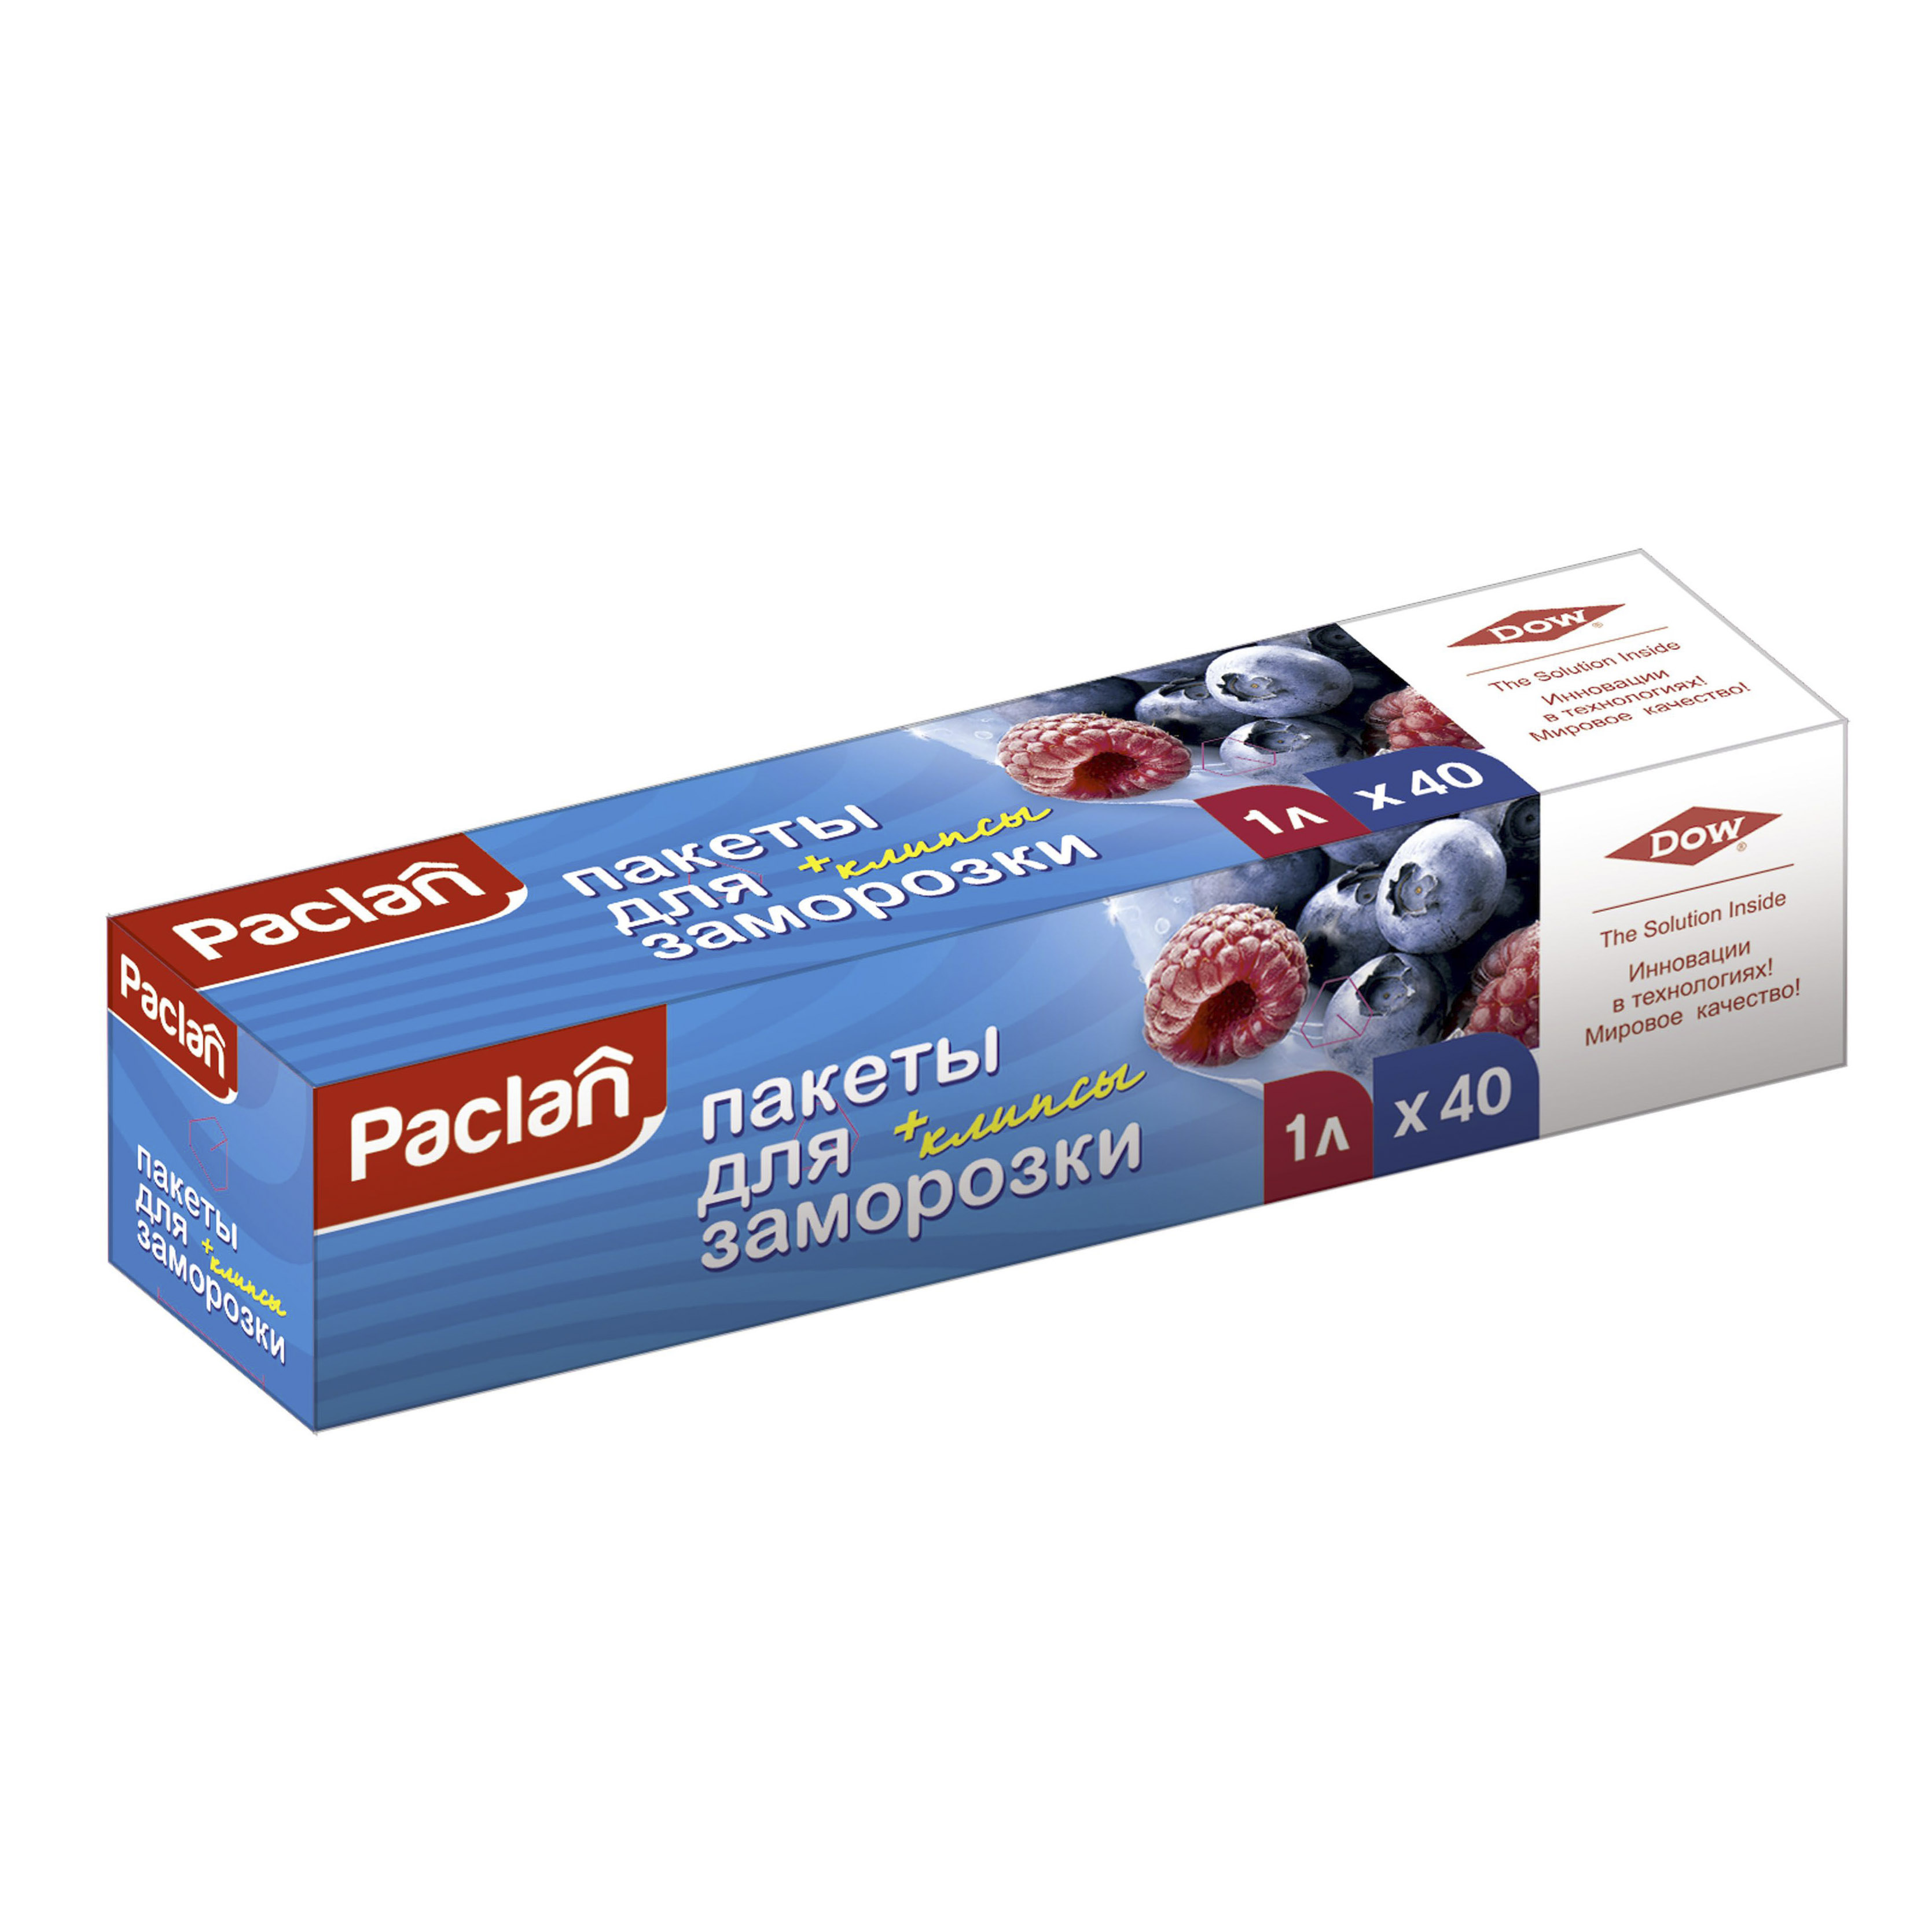 Пакеты Paclan для хранения и замораживания продуктов 1 л 40 шт пакеты paclan для хранения и замораживания продуктов 3 л 30 шт